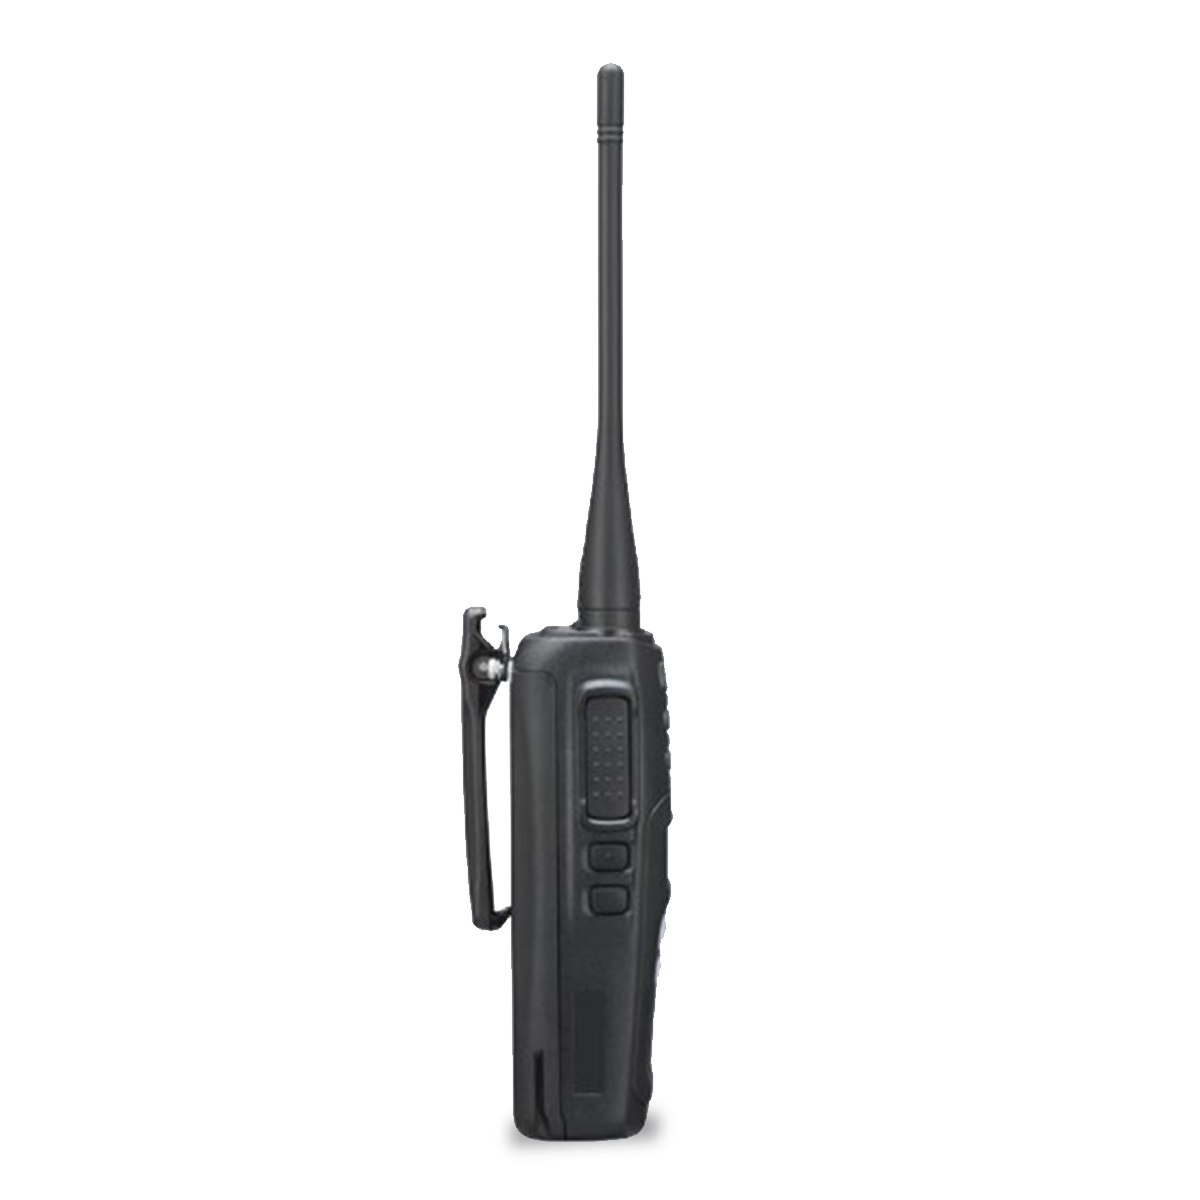 Radio KENWOOD NX-1300-DK2-IS Digital UHF 450-520 MHz con pantalla y teclado limitado intrínsecamente seguro